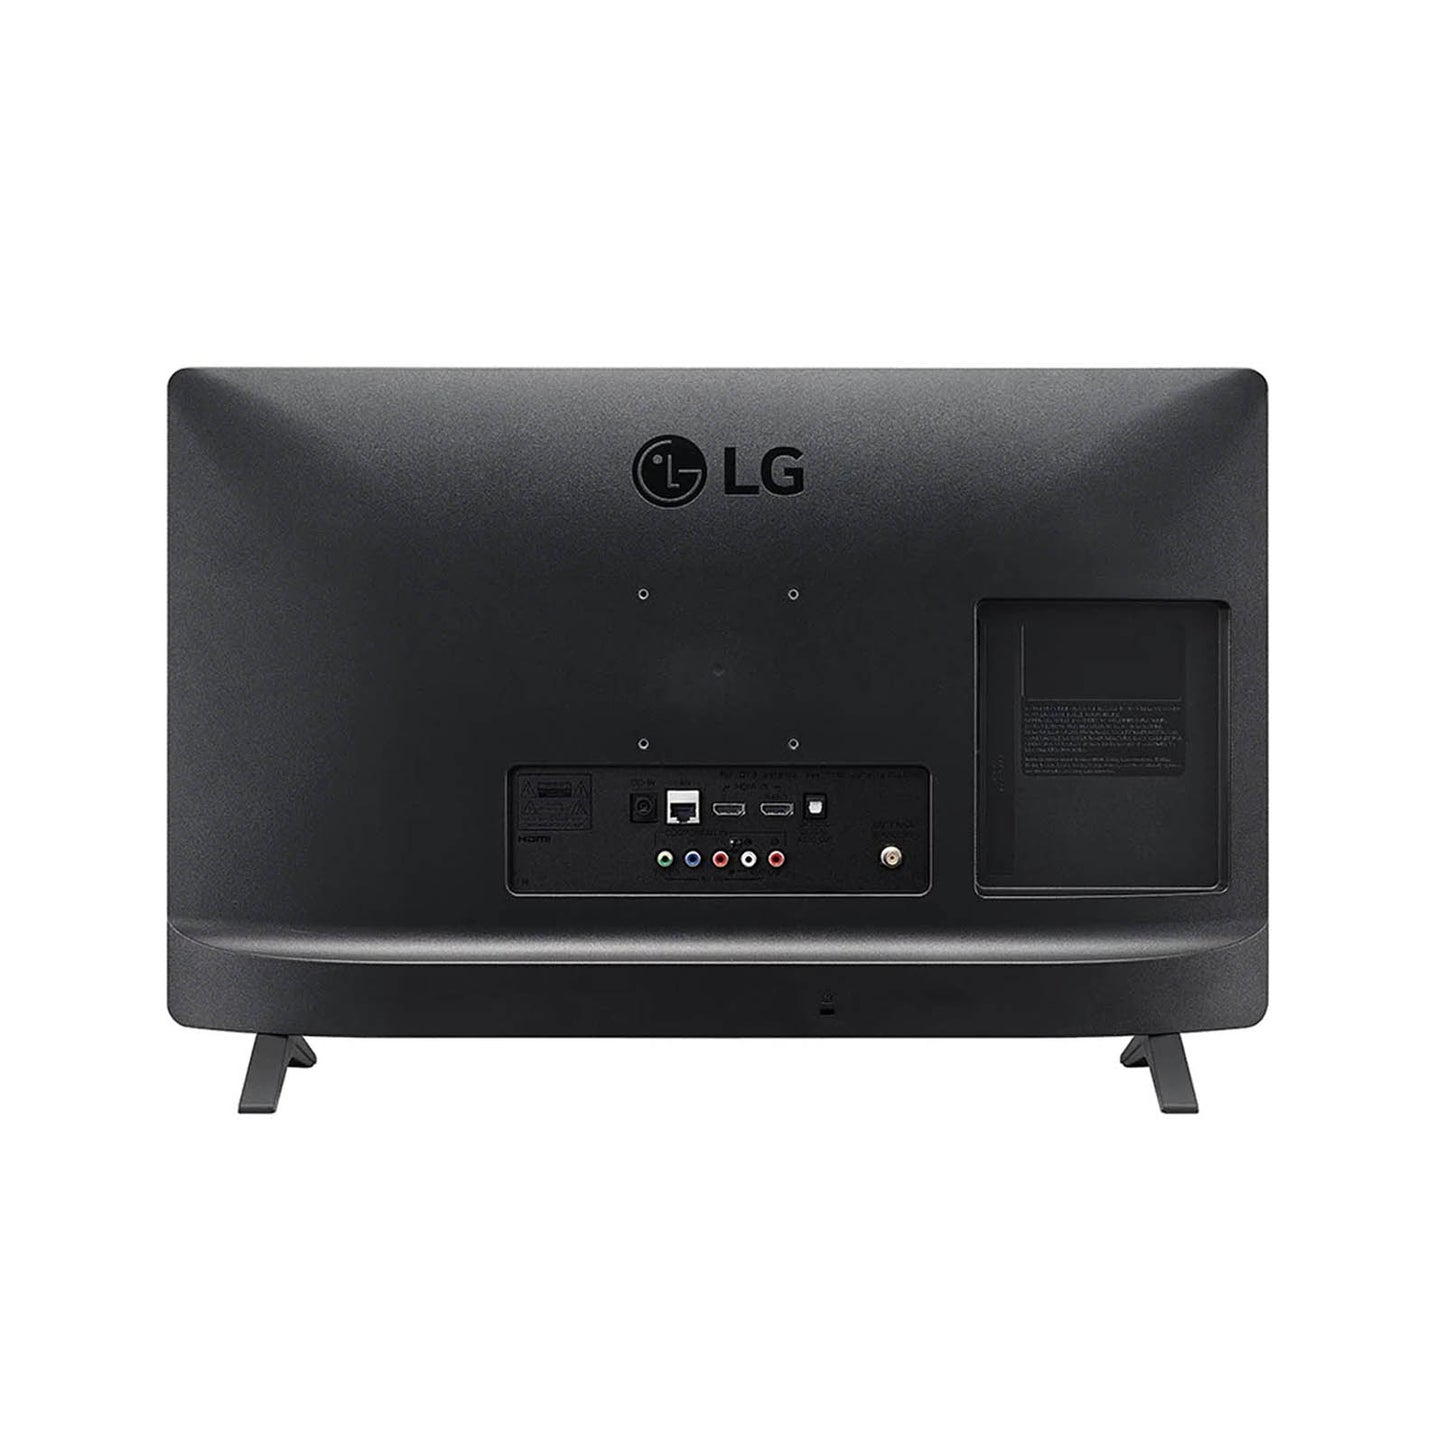 Monitor 24 Pulgadas LG LED Full HD 24TL520D-PU